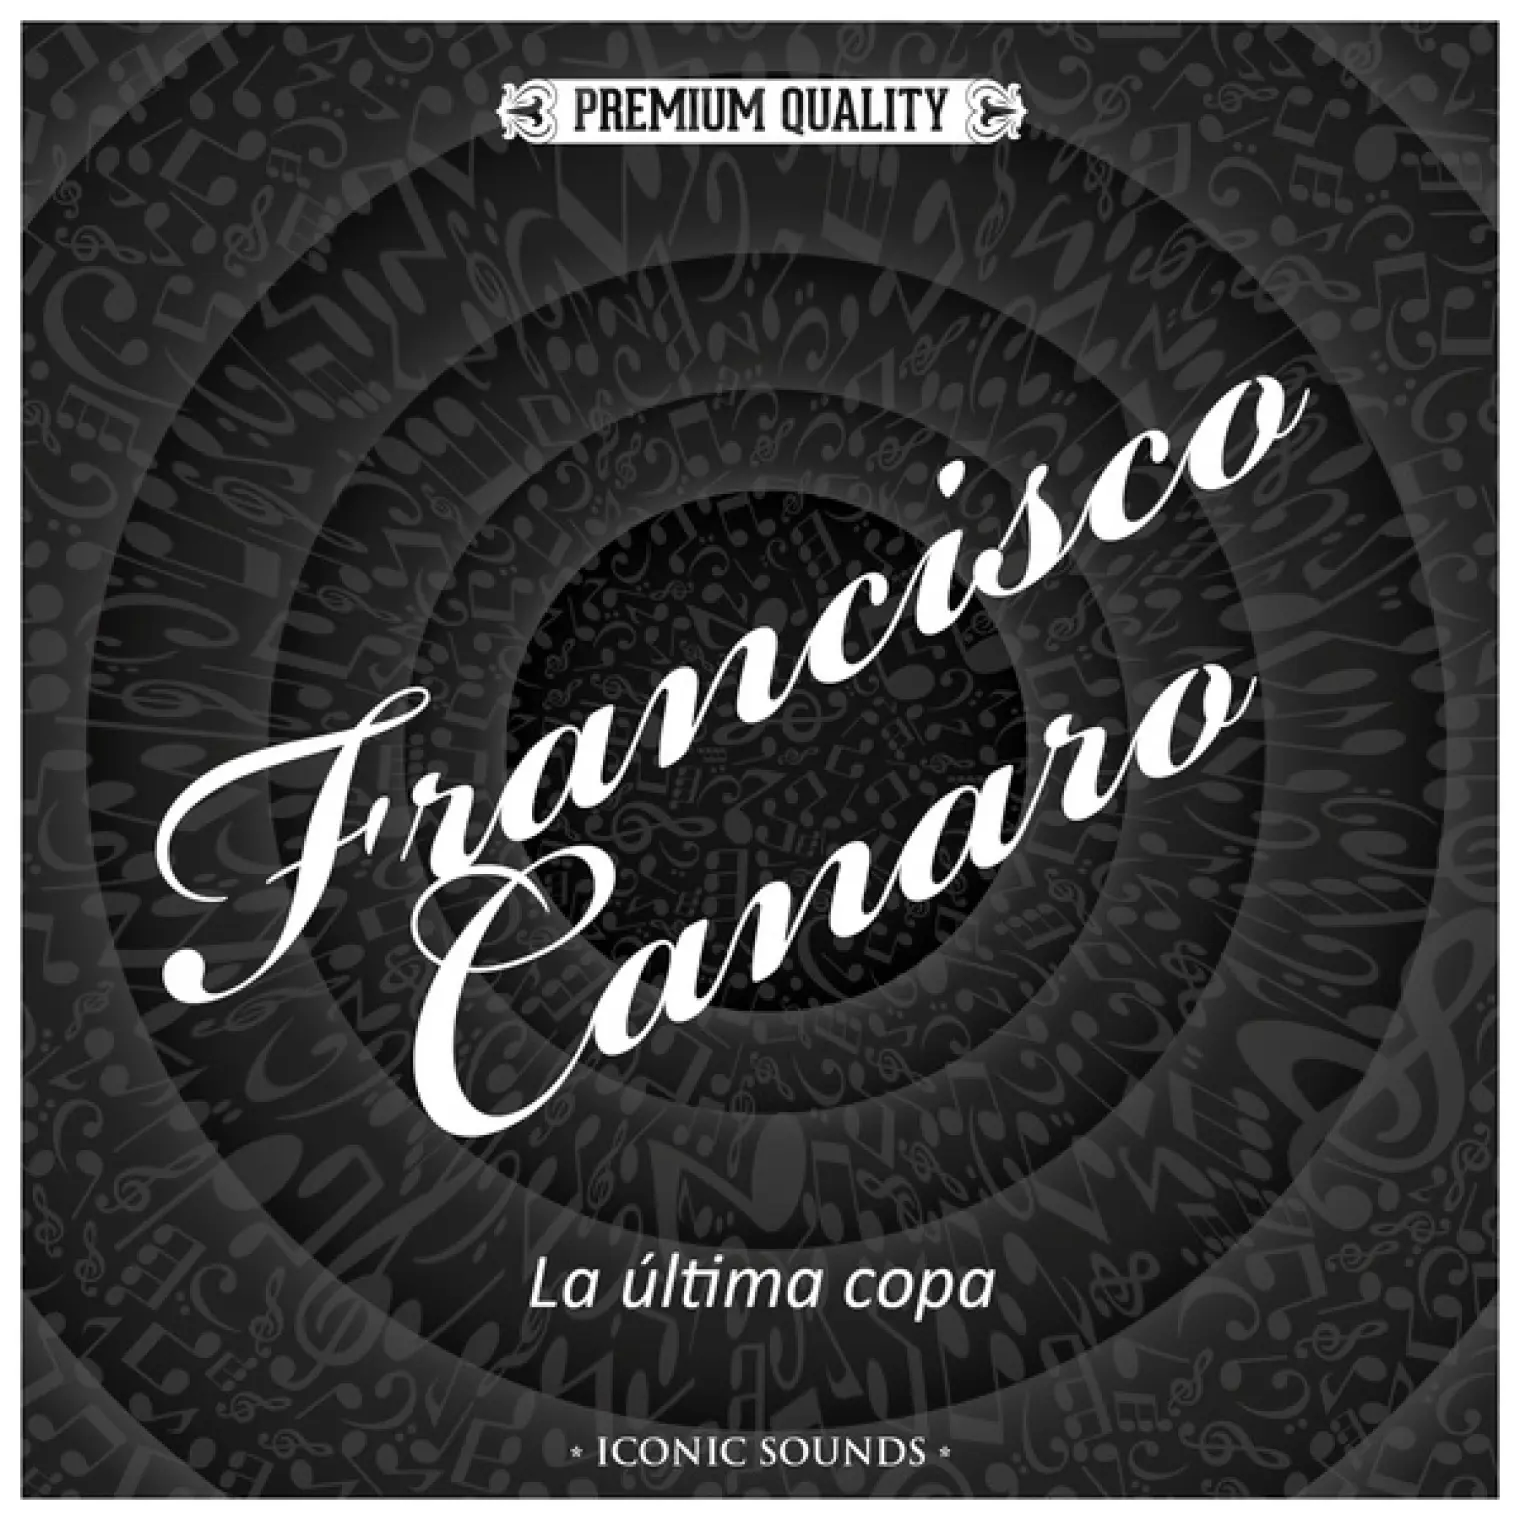 La última copa -  Francisco Canaro 